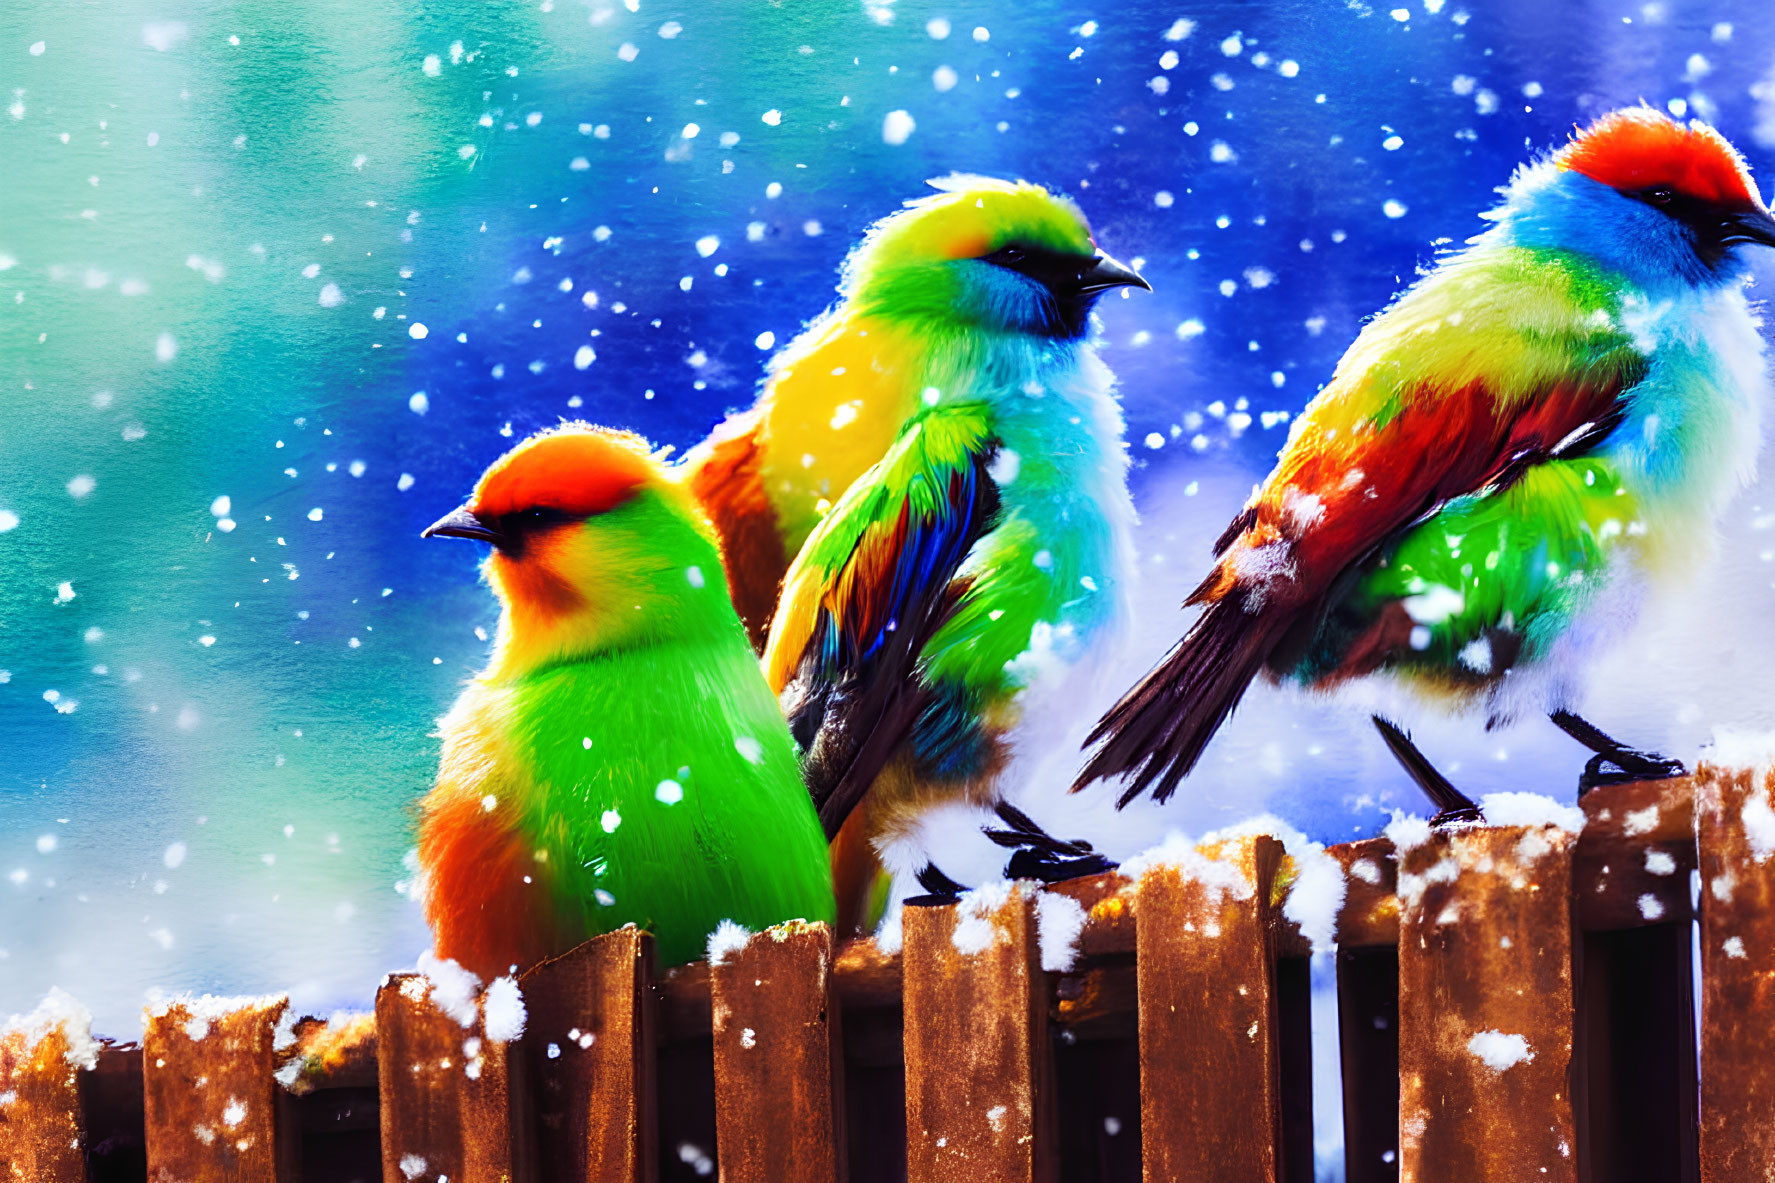 Vibrant Birds on Snowy Fence with Blue Sky